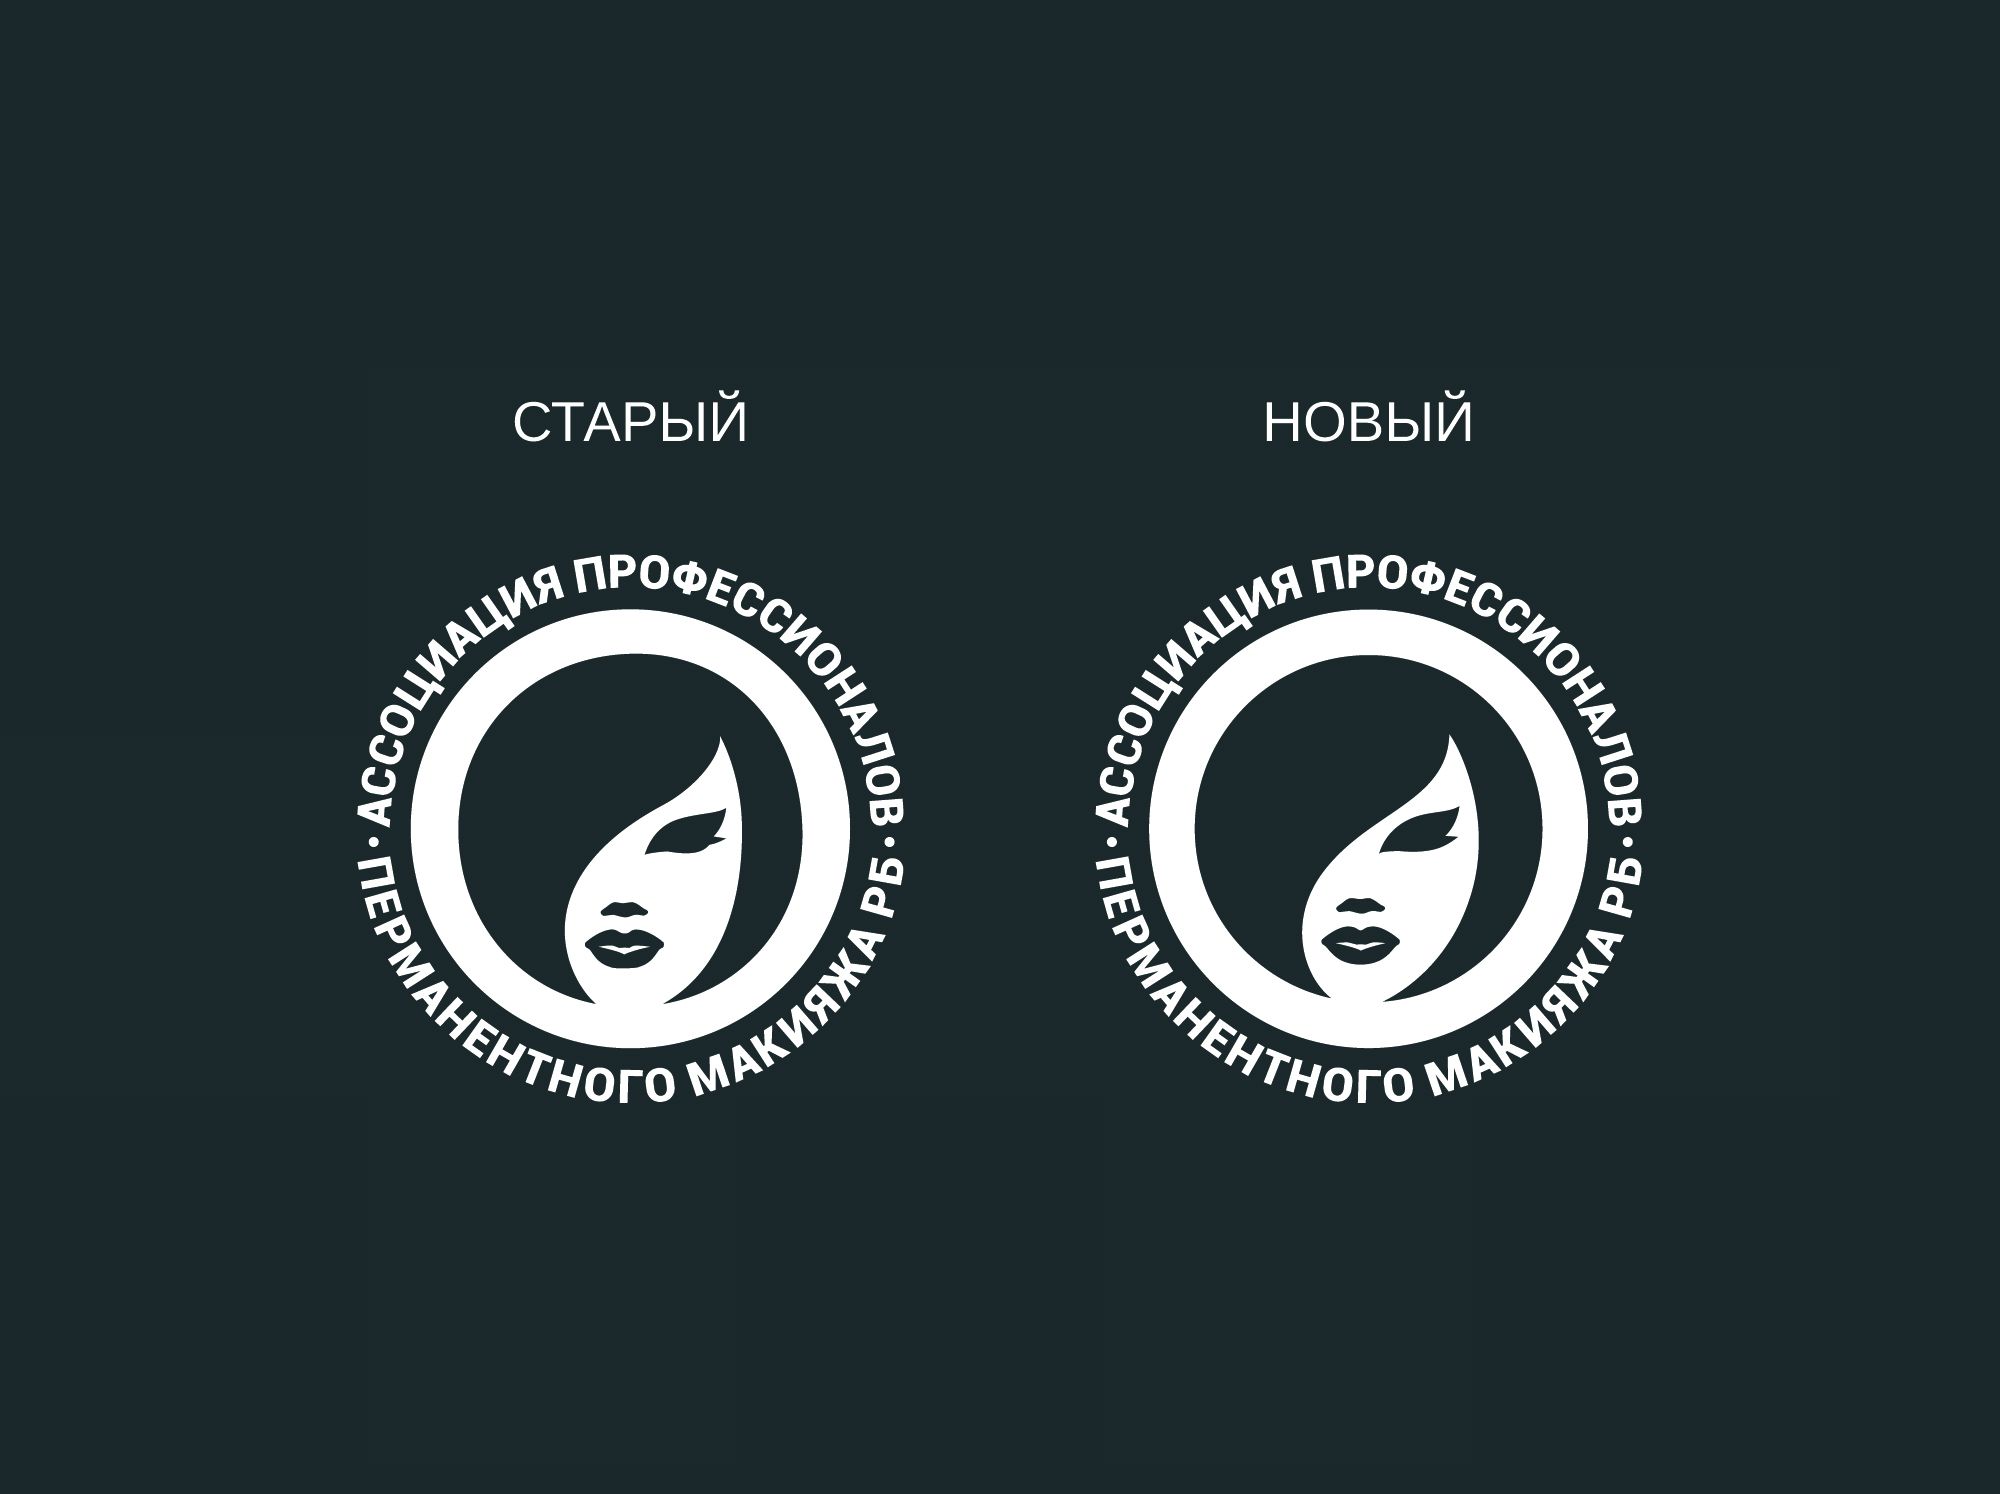 Лого и фирменный стиль для Асоциация профессионалов перманентного макияжа РБ - дизайнер shamaevserg